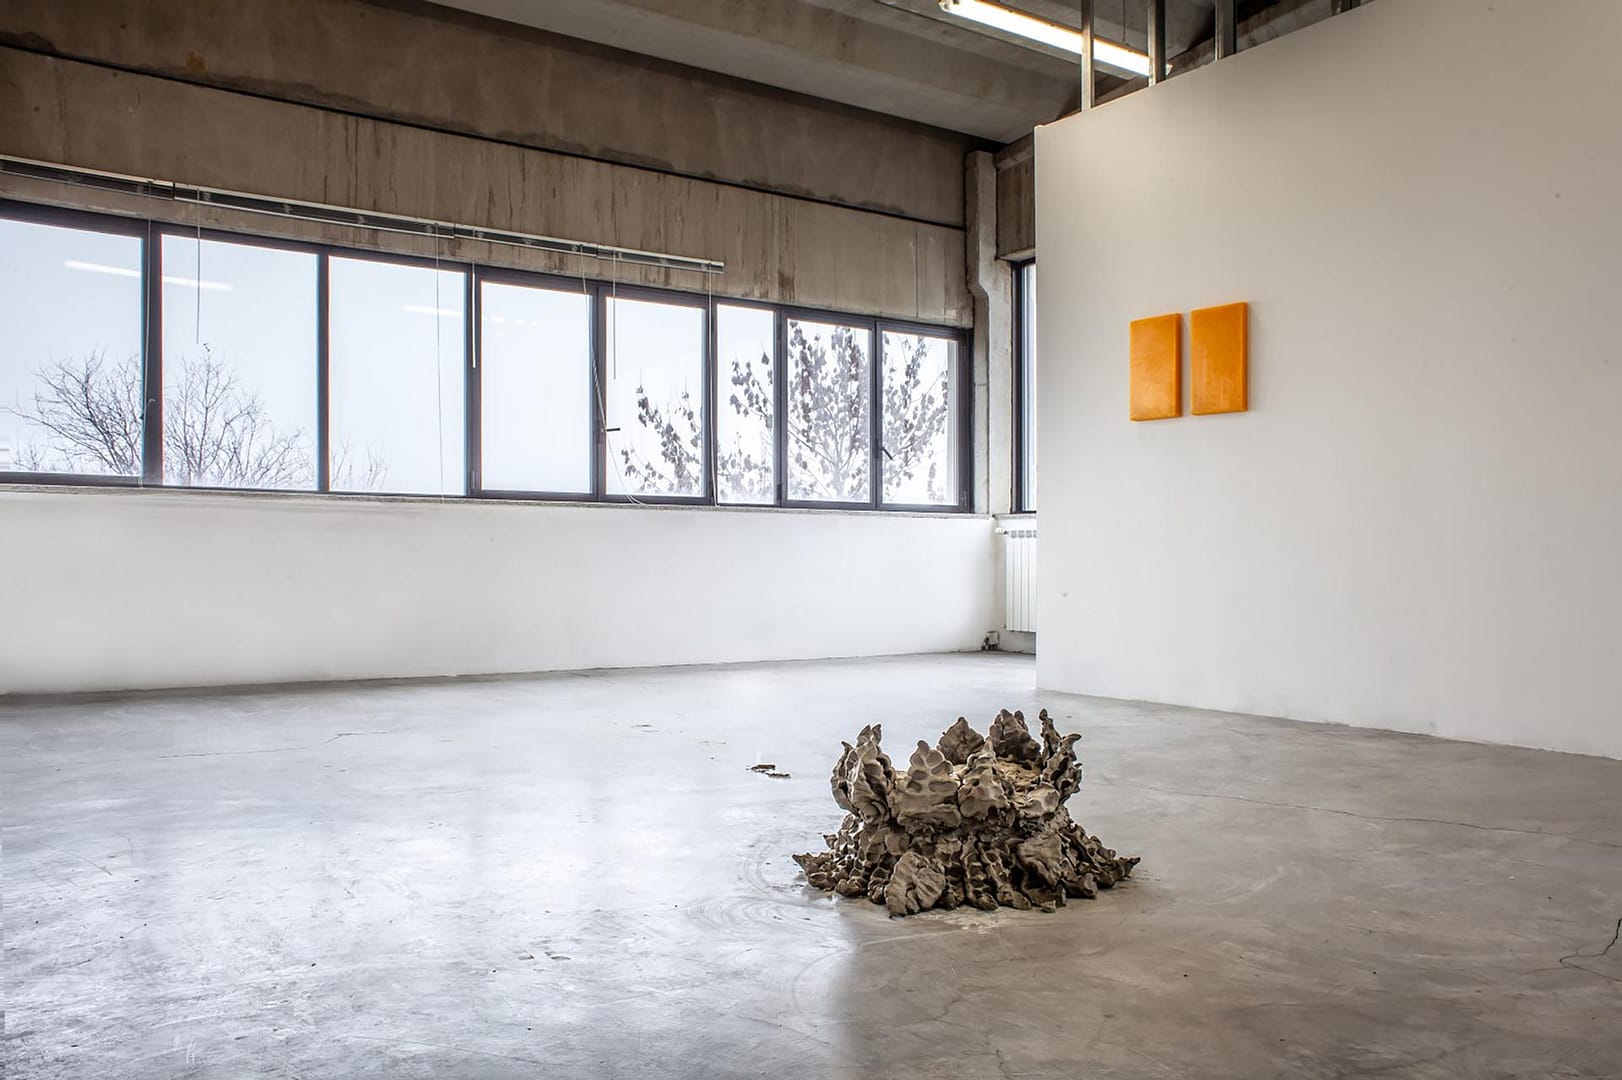 All’interno del complesso della Fonderia artistica de Carli, una nuova galleria dedicata all’arte contemporanea